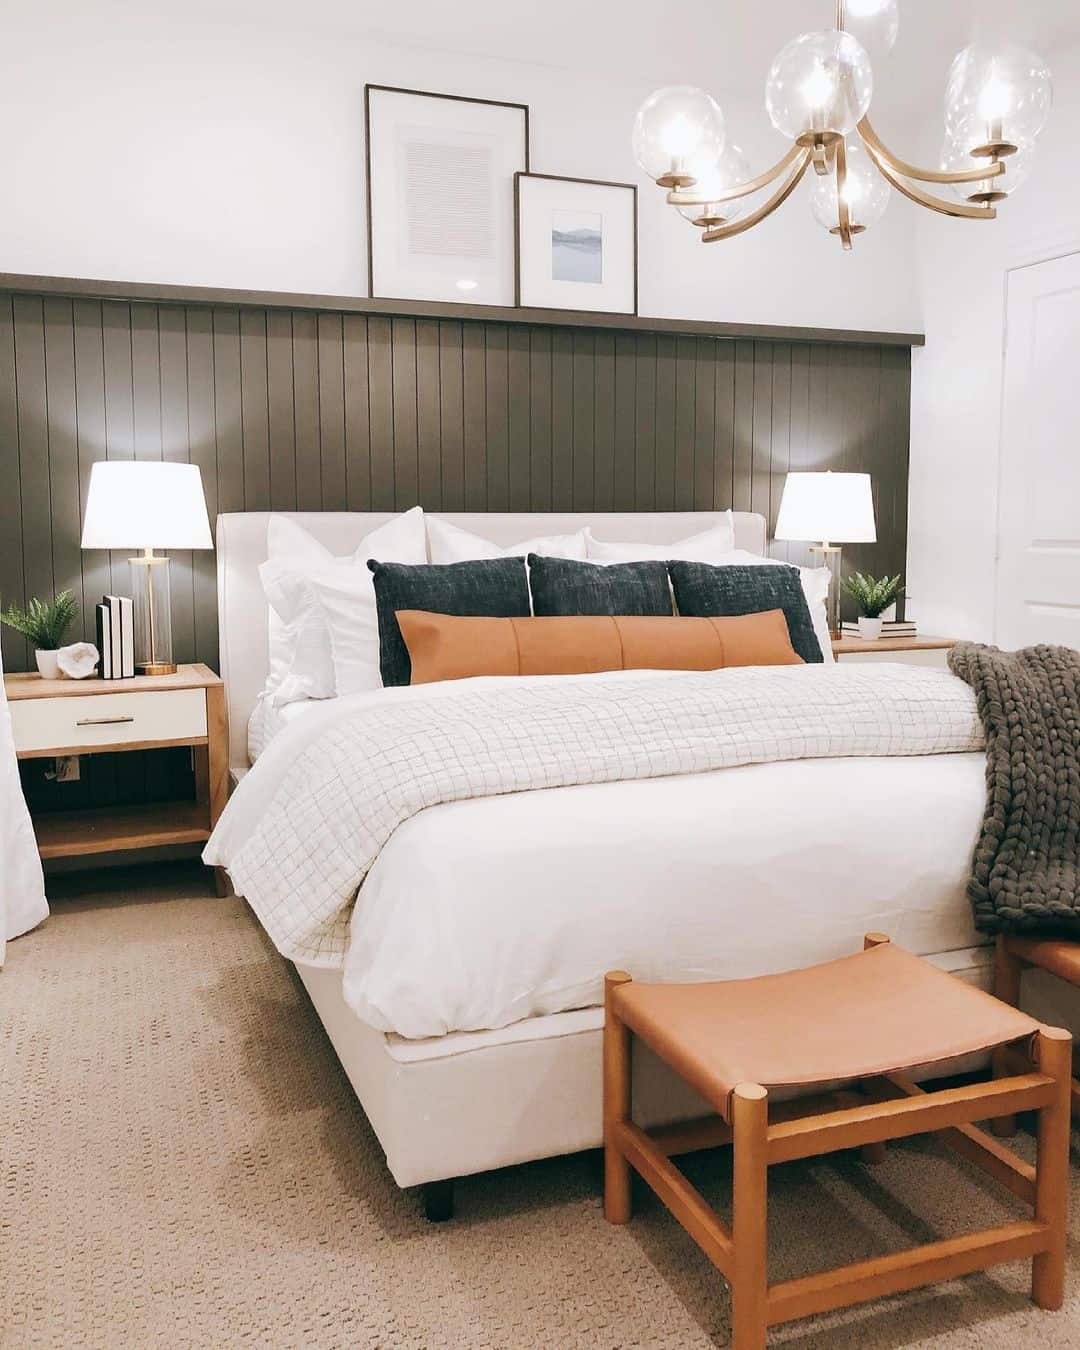 A minimalist bedroom set